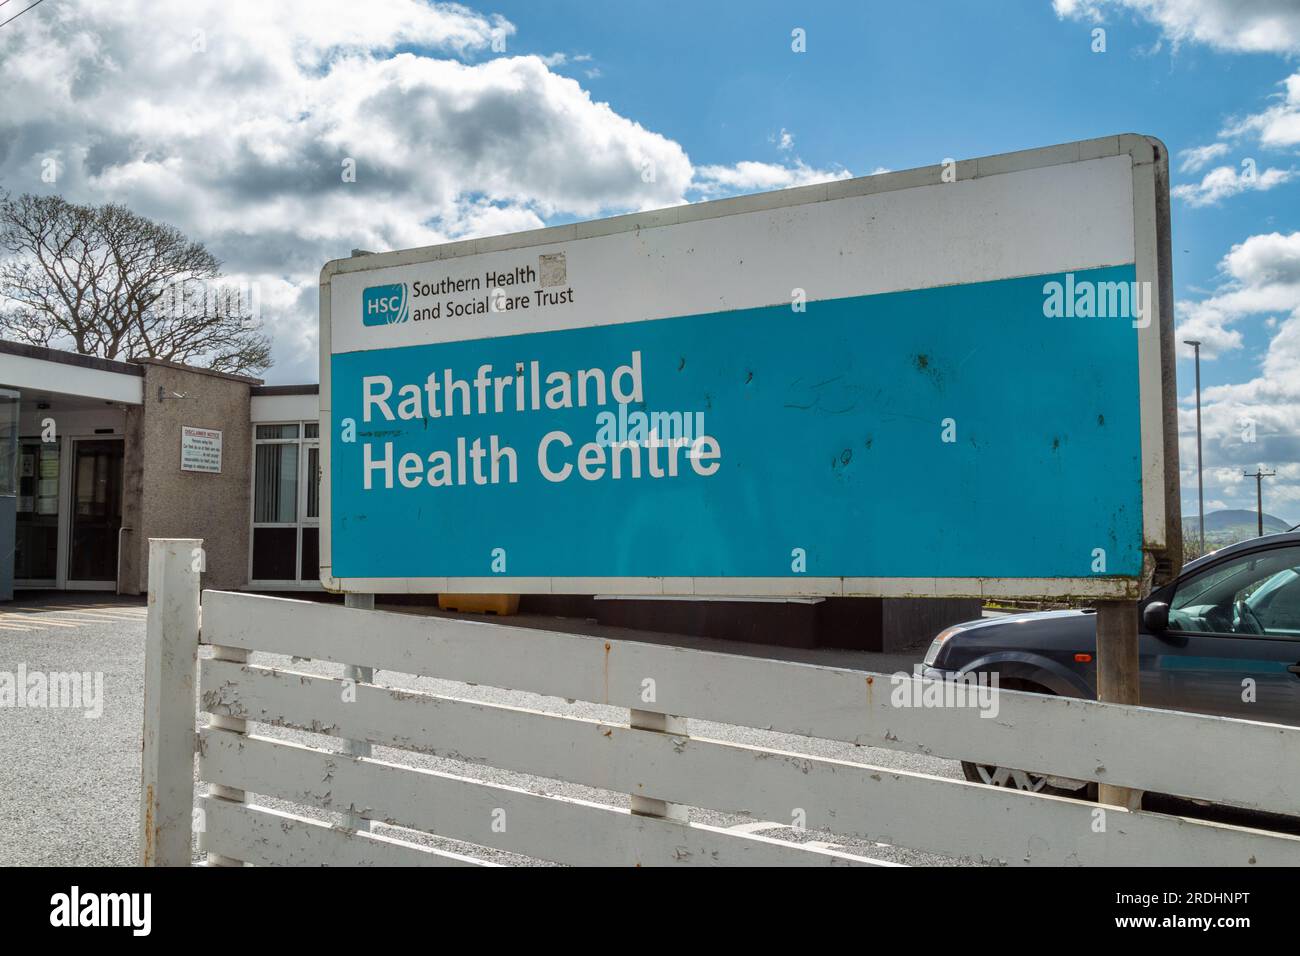 L'insegna presso il Rathfriland Health Centre, gestito dall'NHS HSC Southern Health and Social Care Trust. Co Giù, Irlanda del Nord Foto Stock